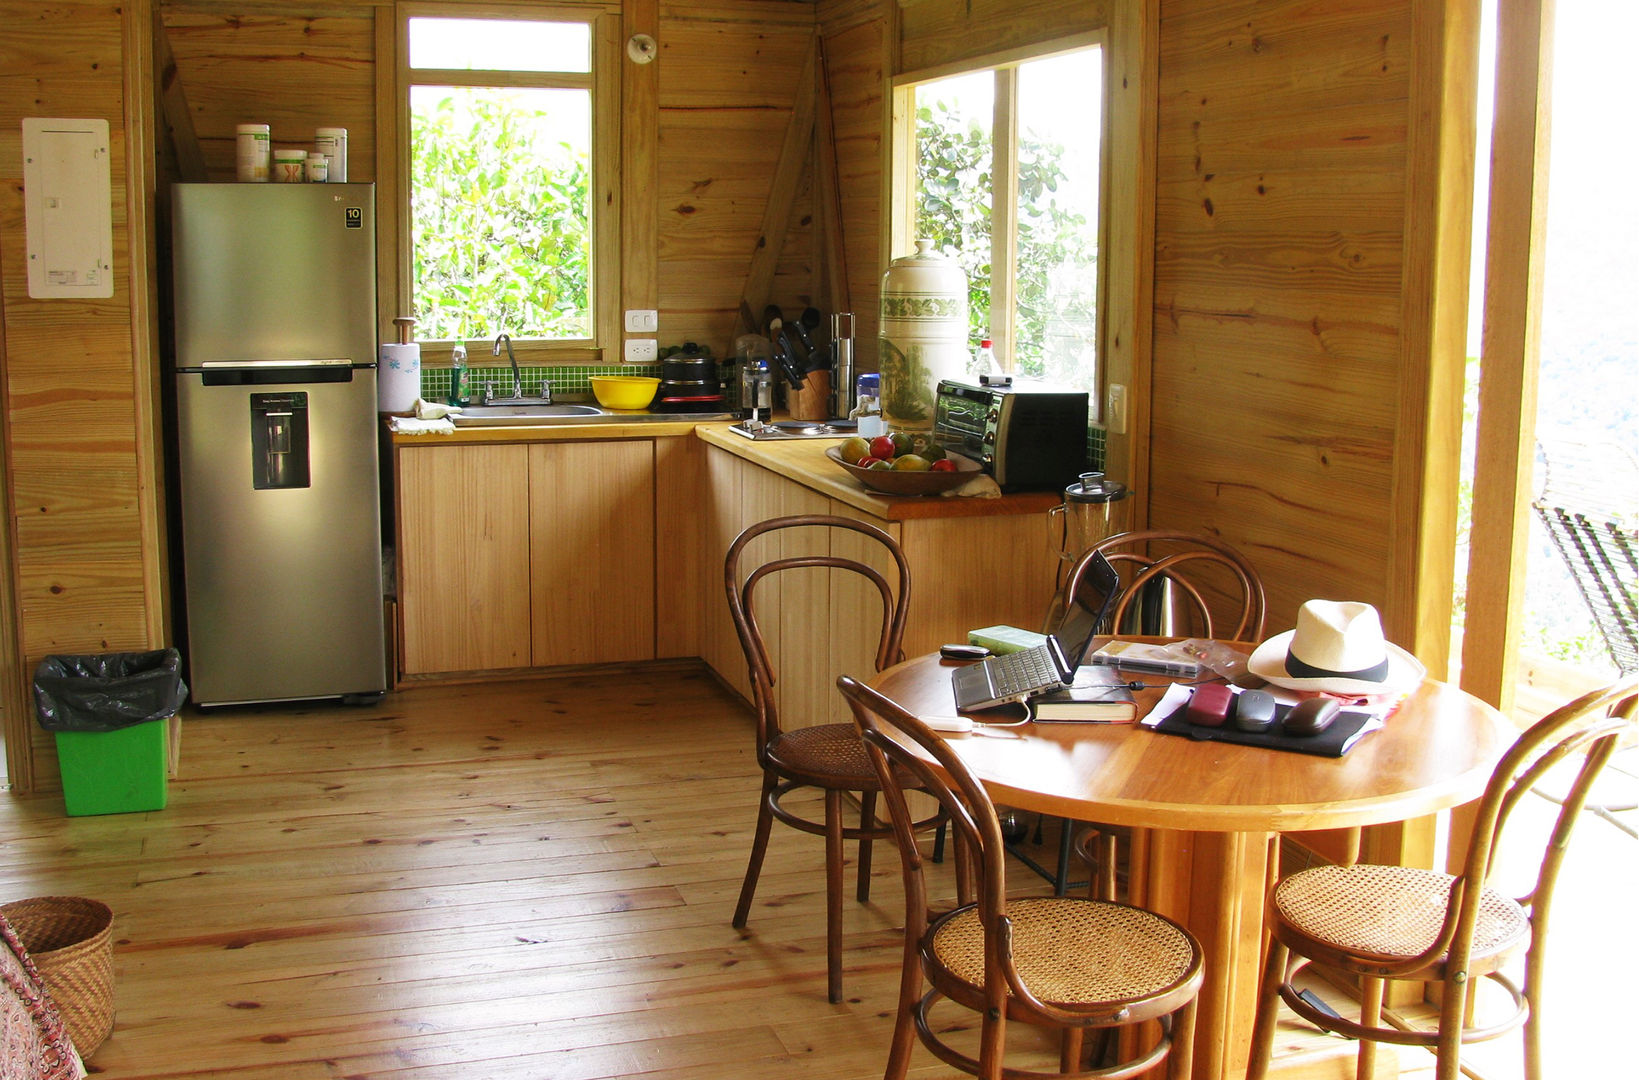 Suite de madera TdE, Taller de Ensamble SAS Taller de Ensamble SAS Cocinas modernas Madera Acabado en madera